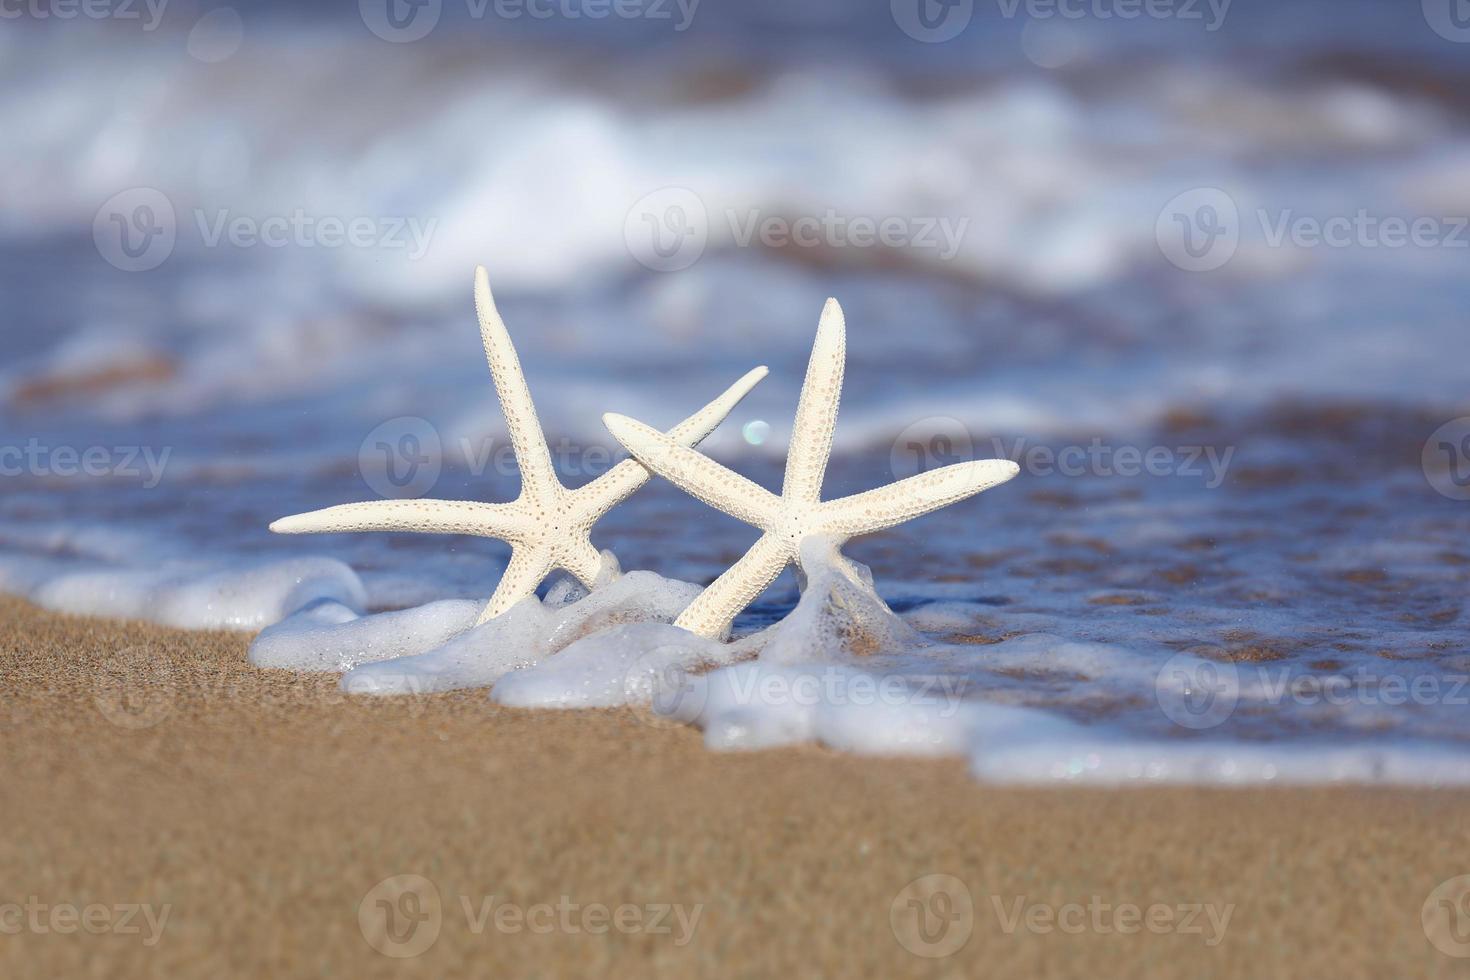 zeester in het zand met zeeschuimgolven foto